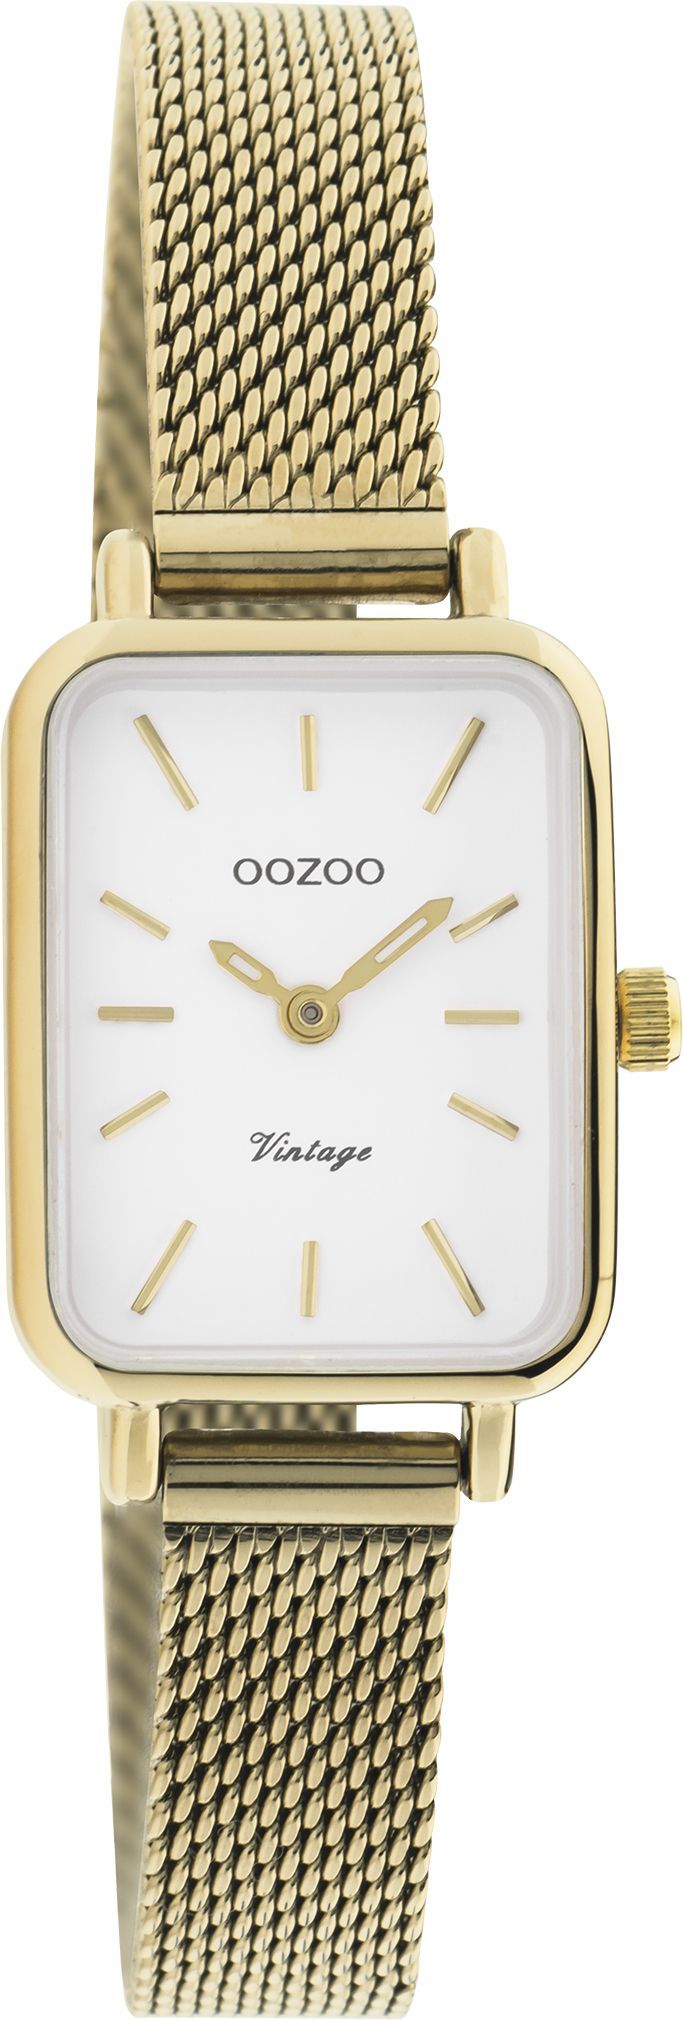 OOZOO Vintage C20268 dorato